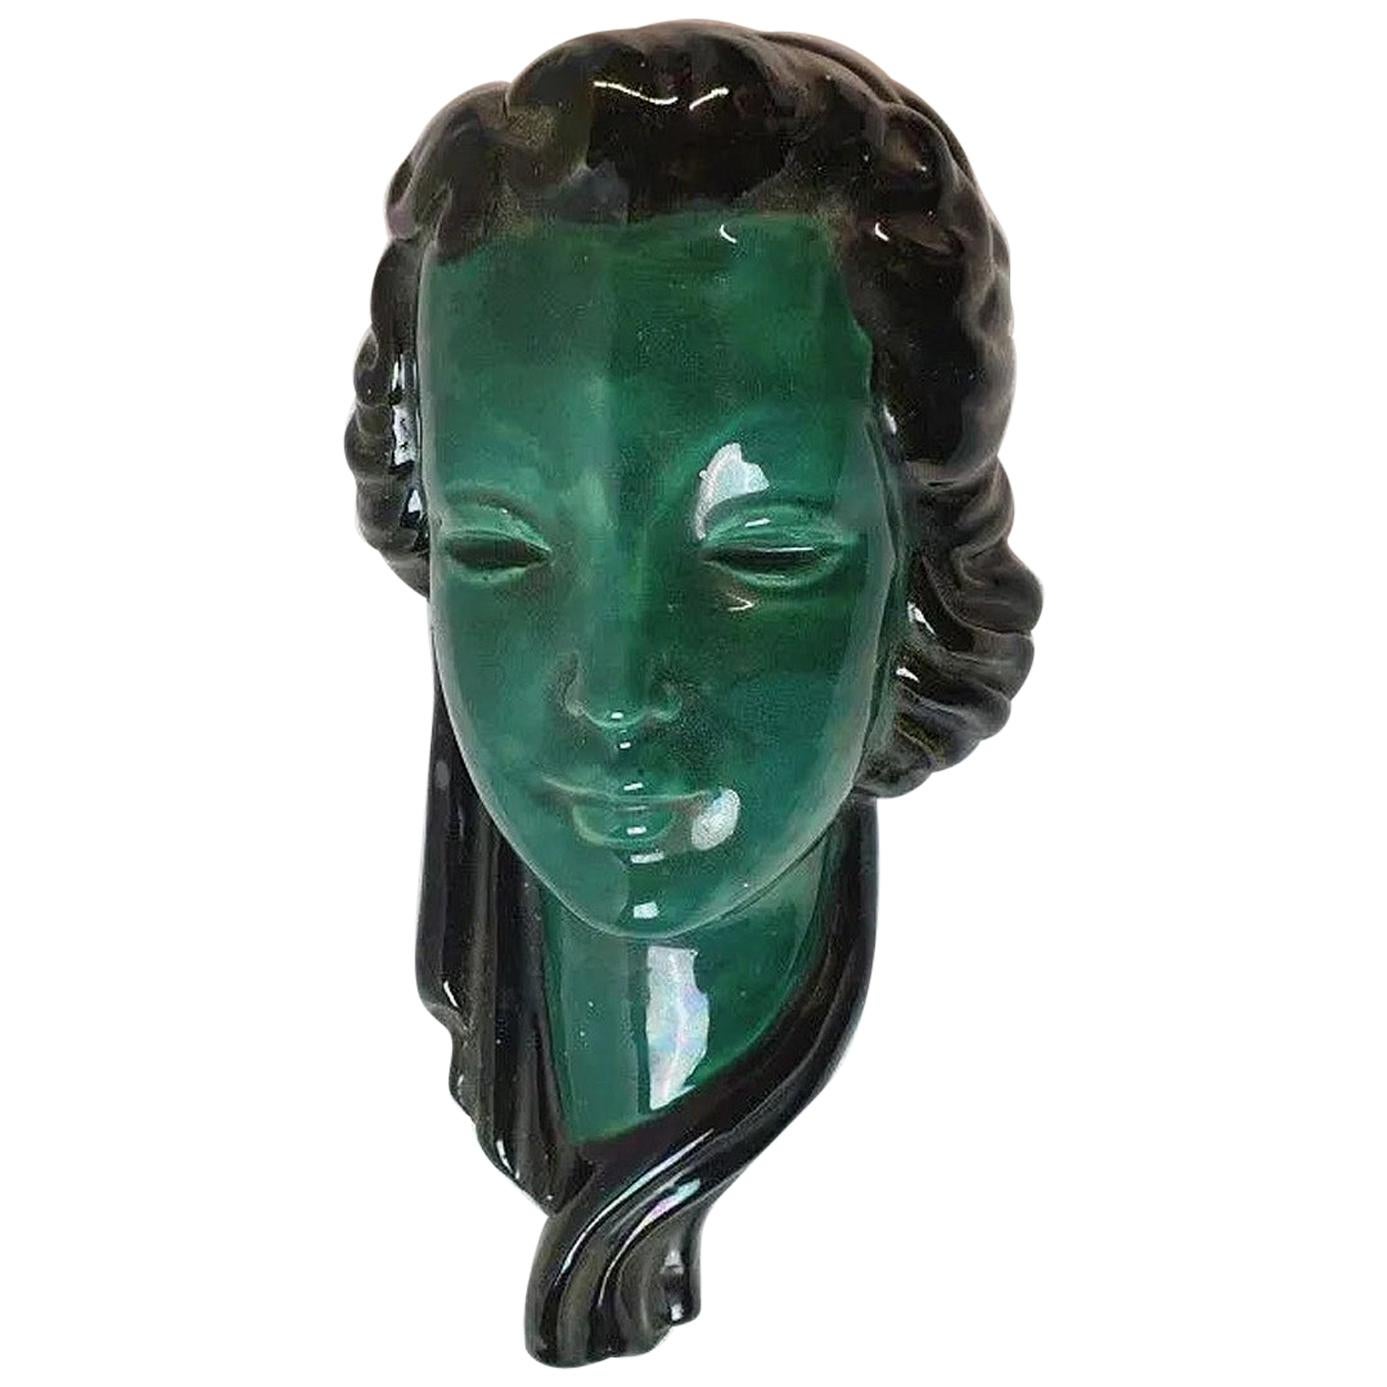 Masque en céramique émaillée, datant d'environ 1950